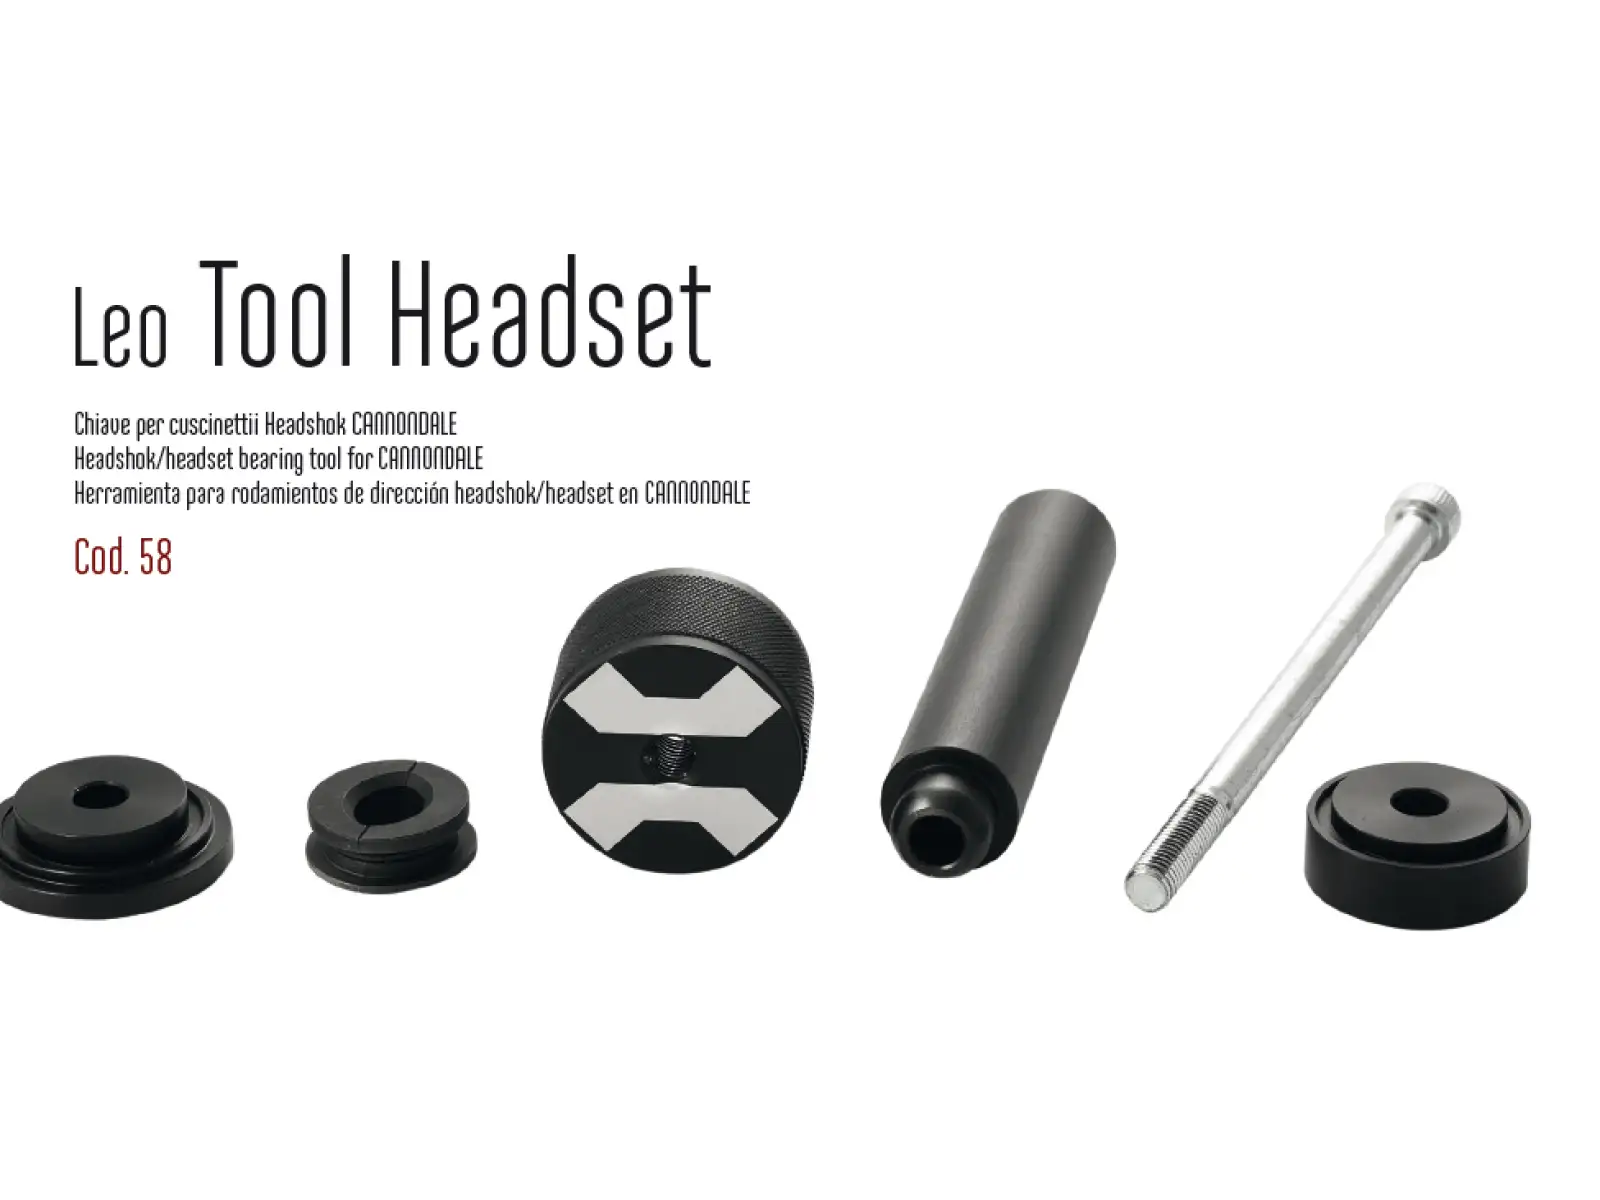 Leonardi Factory Tool Headset lis pro ložiska Cannondale Headshock